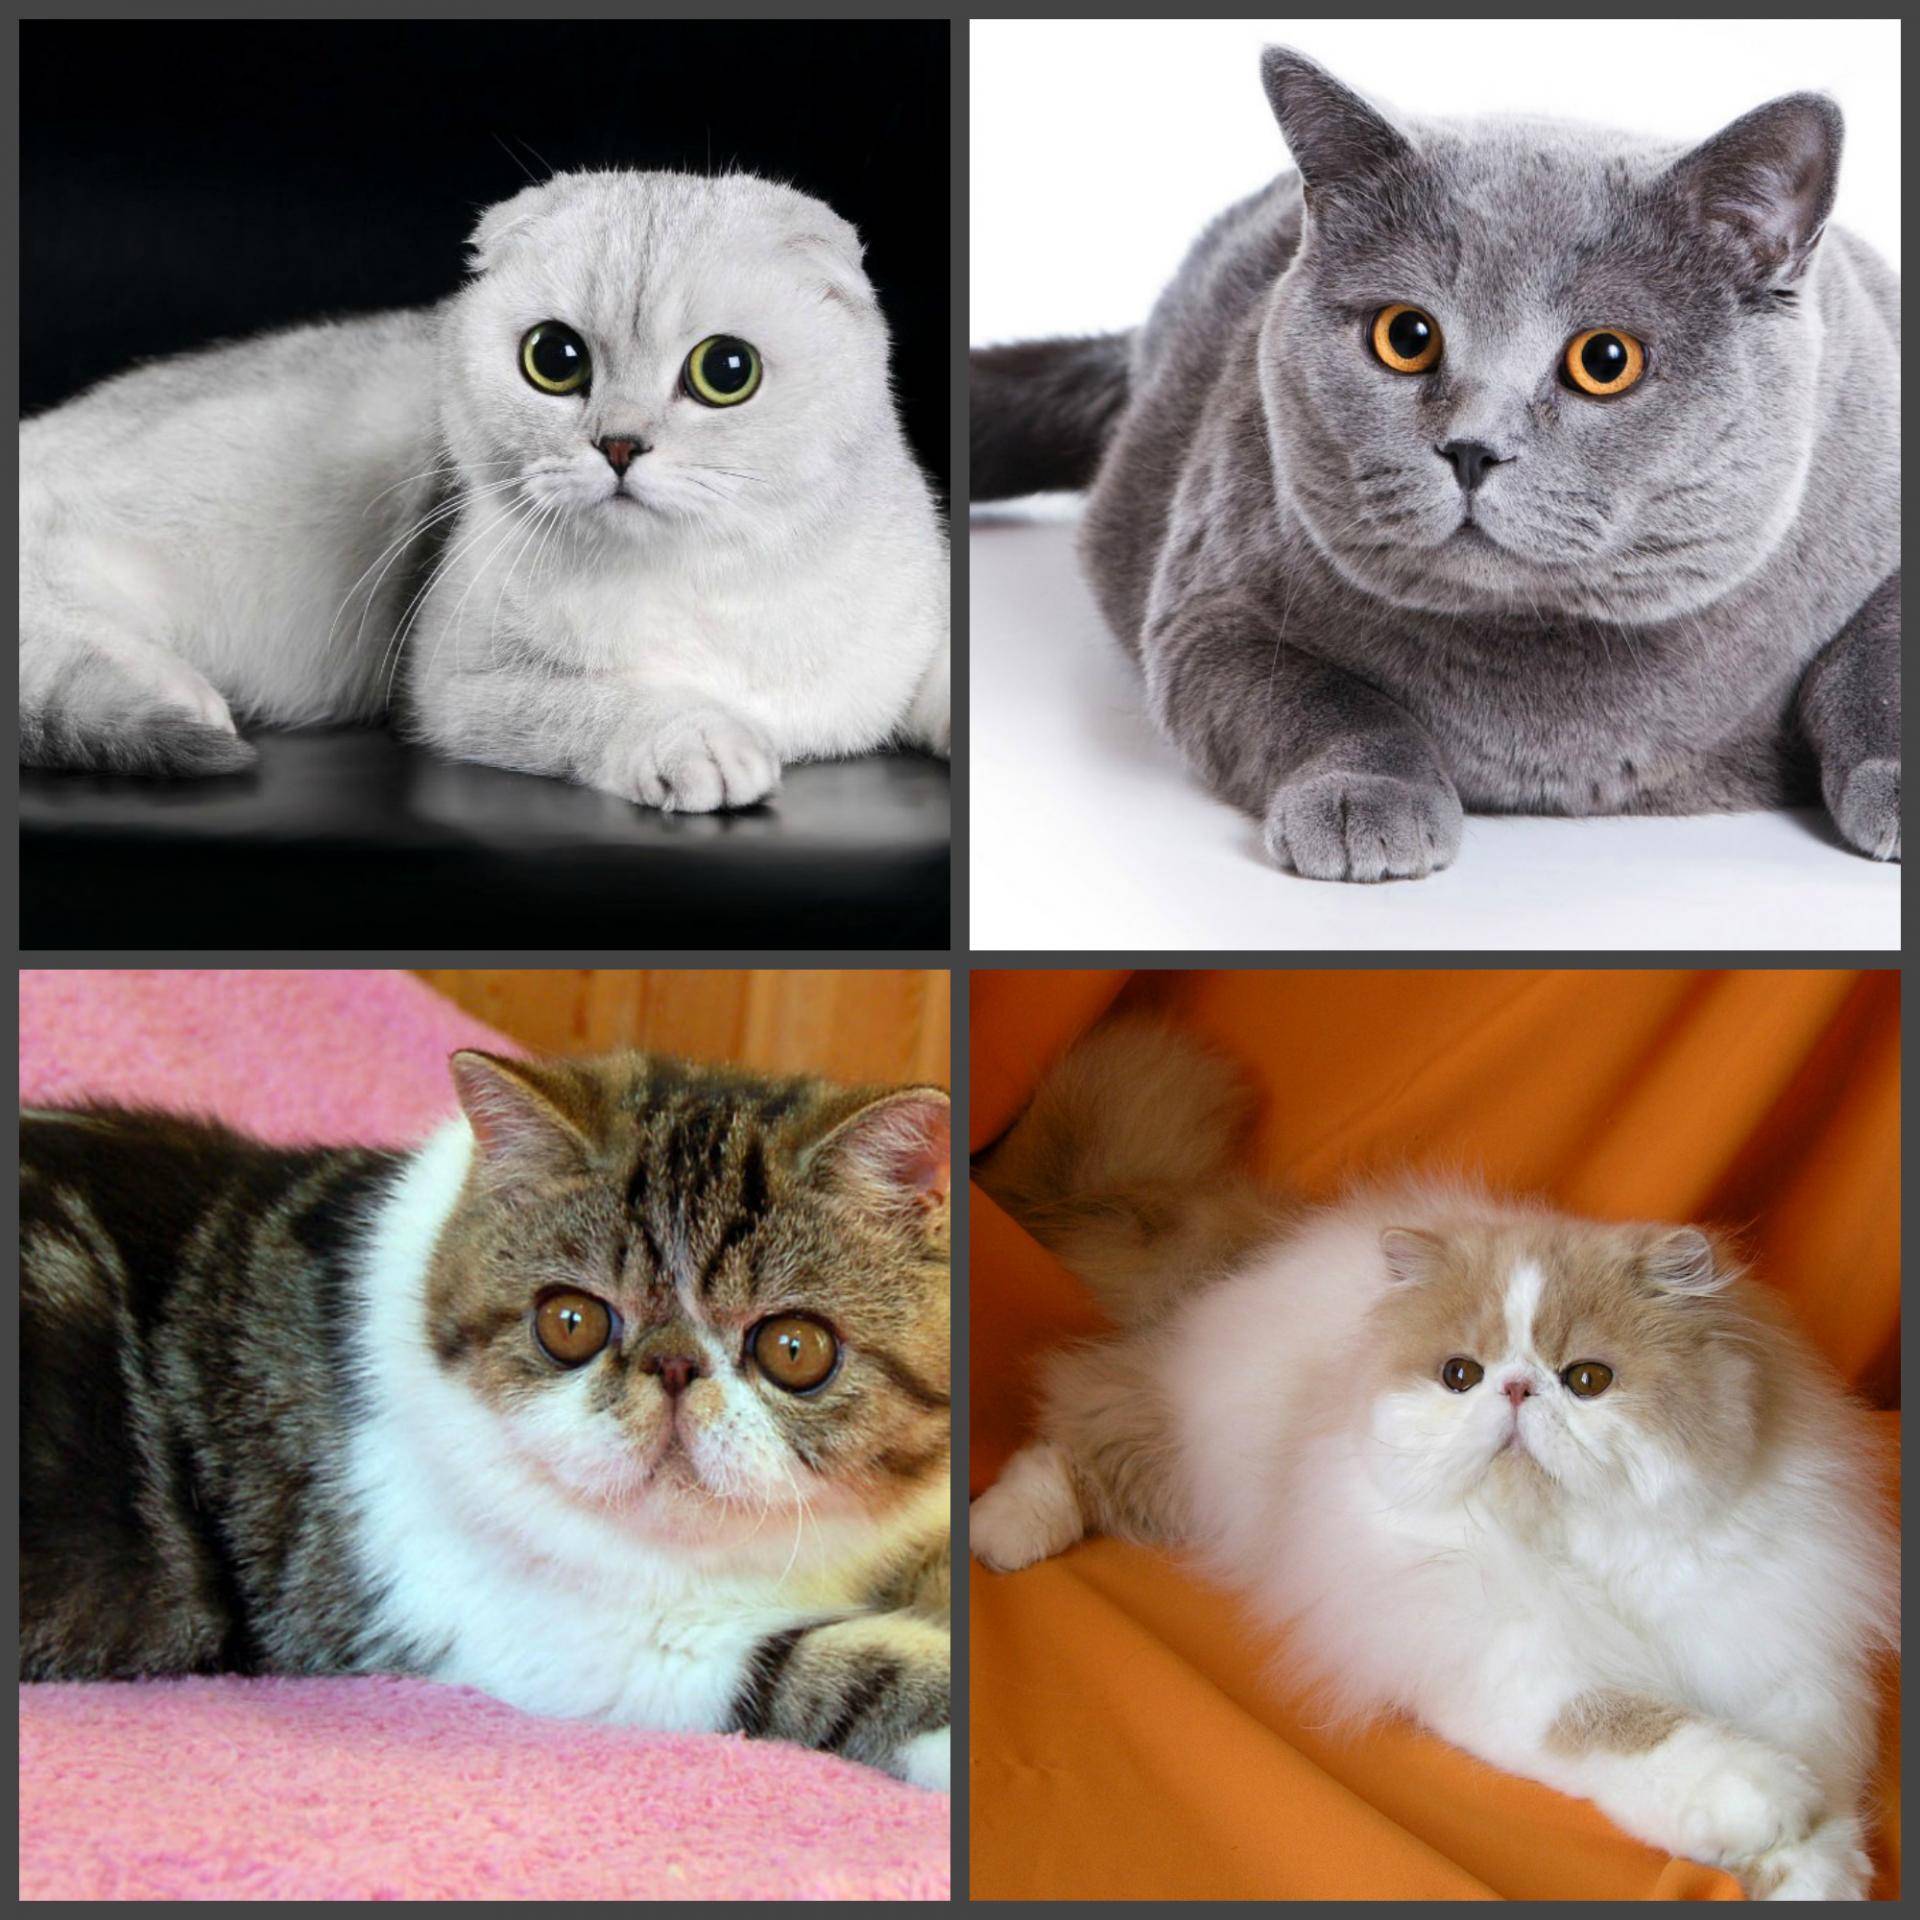 Вислоухий британец и шотландец: ключевые отличия внешнего вида, характера, фото, чем отличаются британские и шотландские кошки